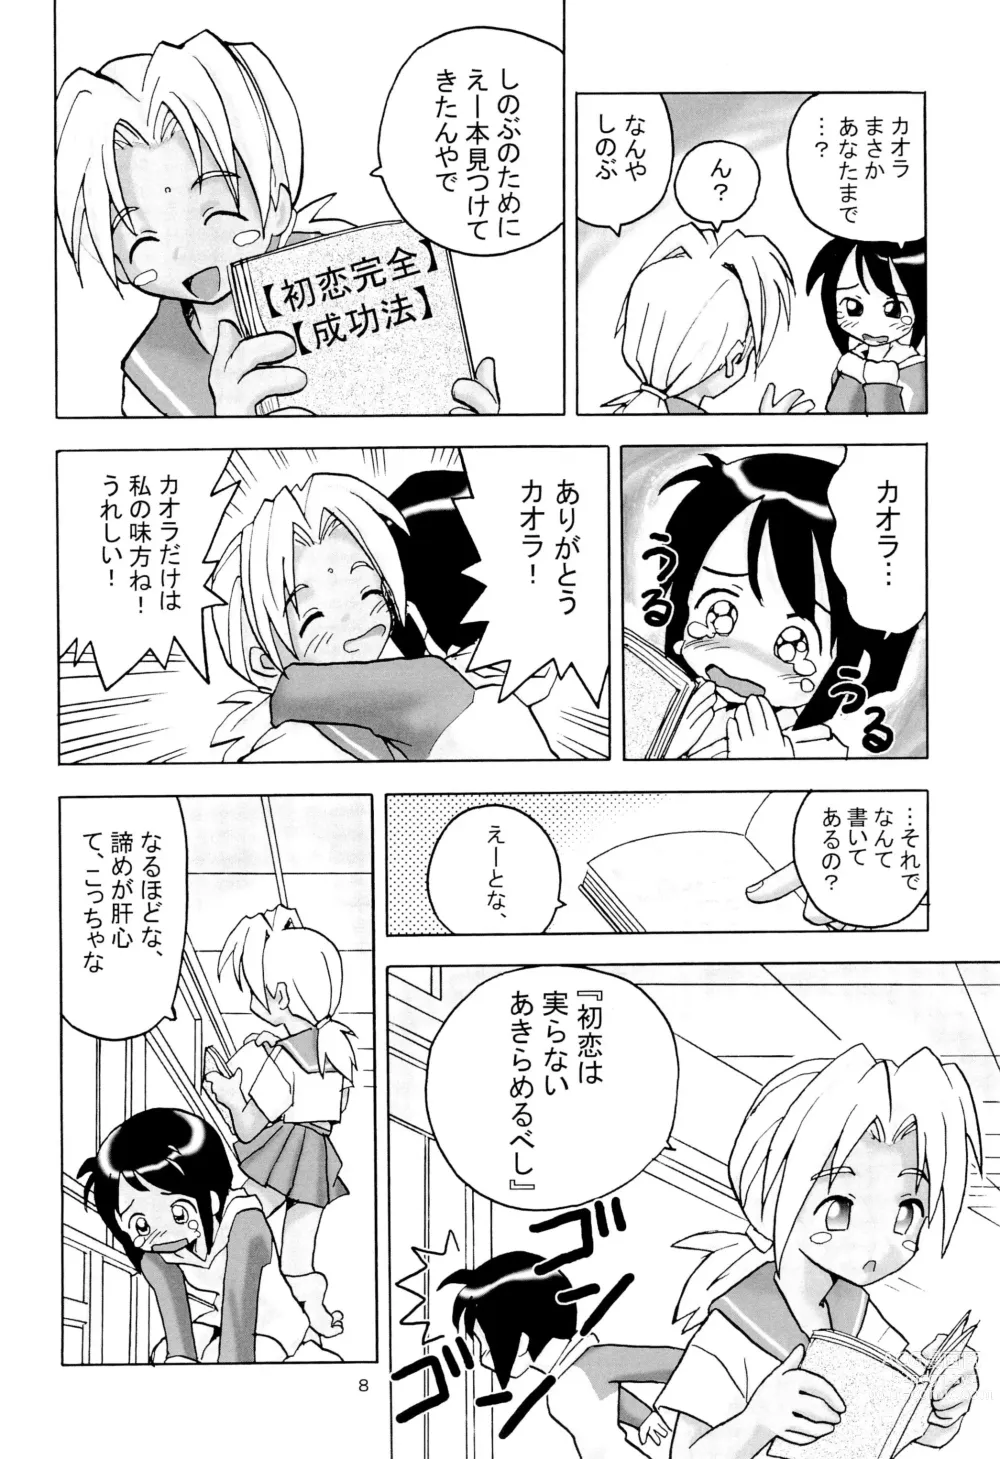 Page 10 of doujinshi Shino Buna